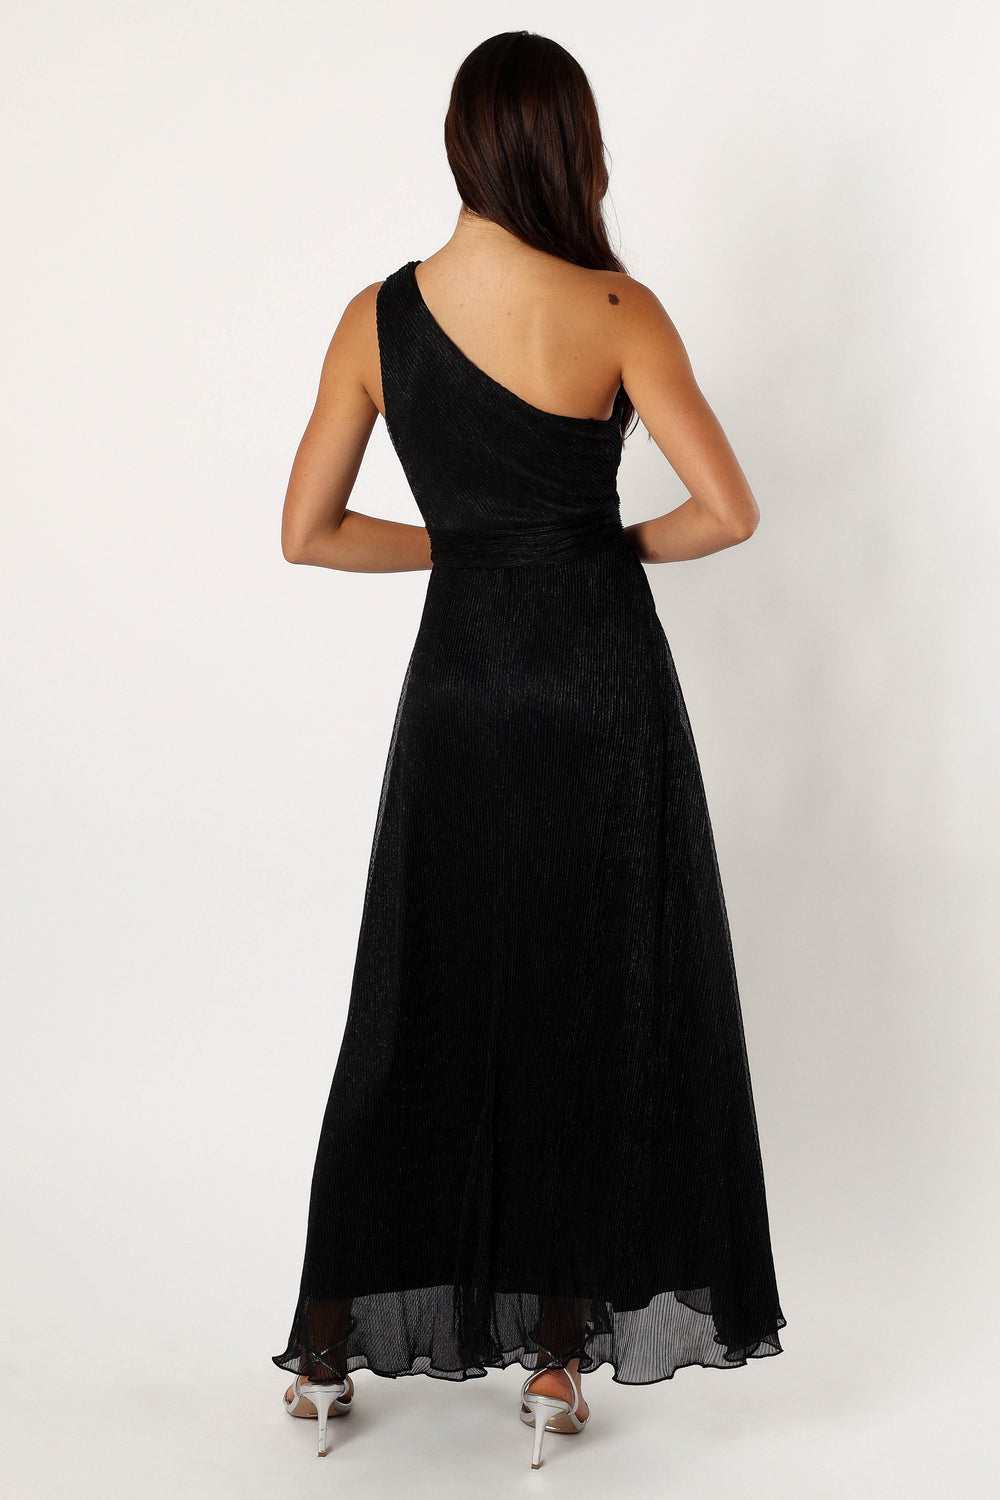 Shop Formal Dress - Watson One Shoulder Maxi Dress - Black Sparkle fourth image